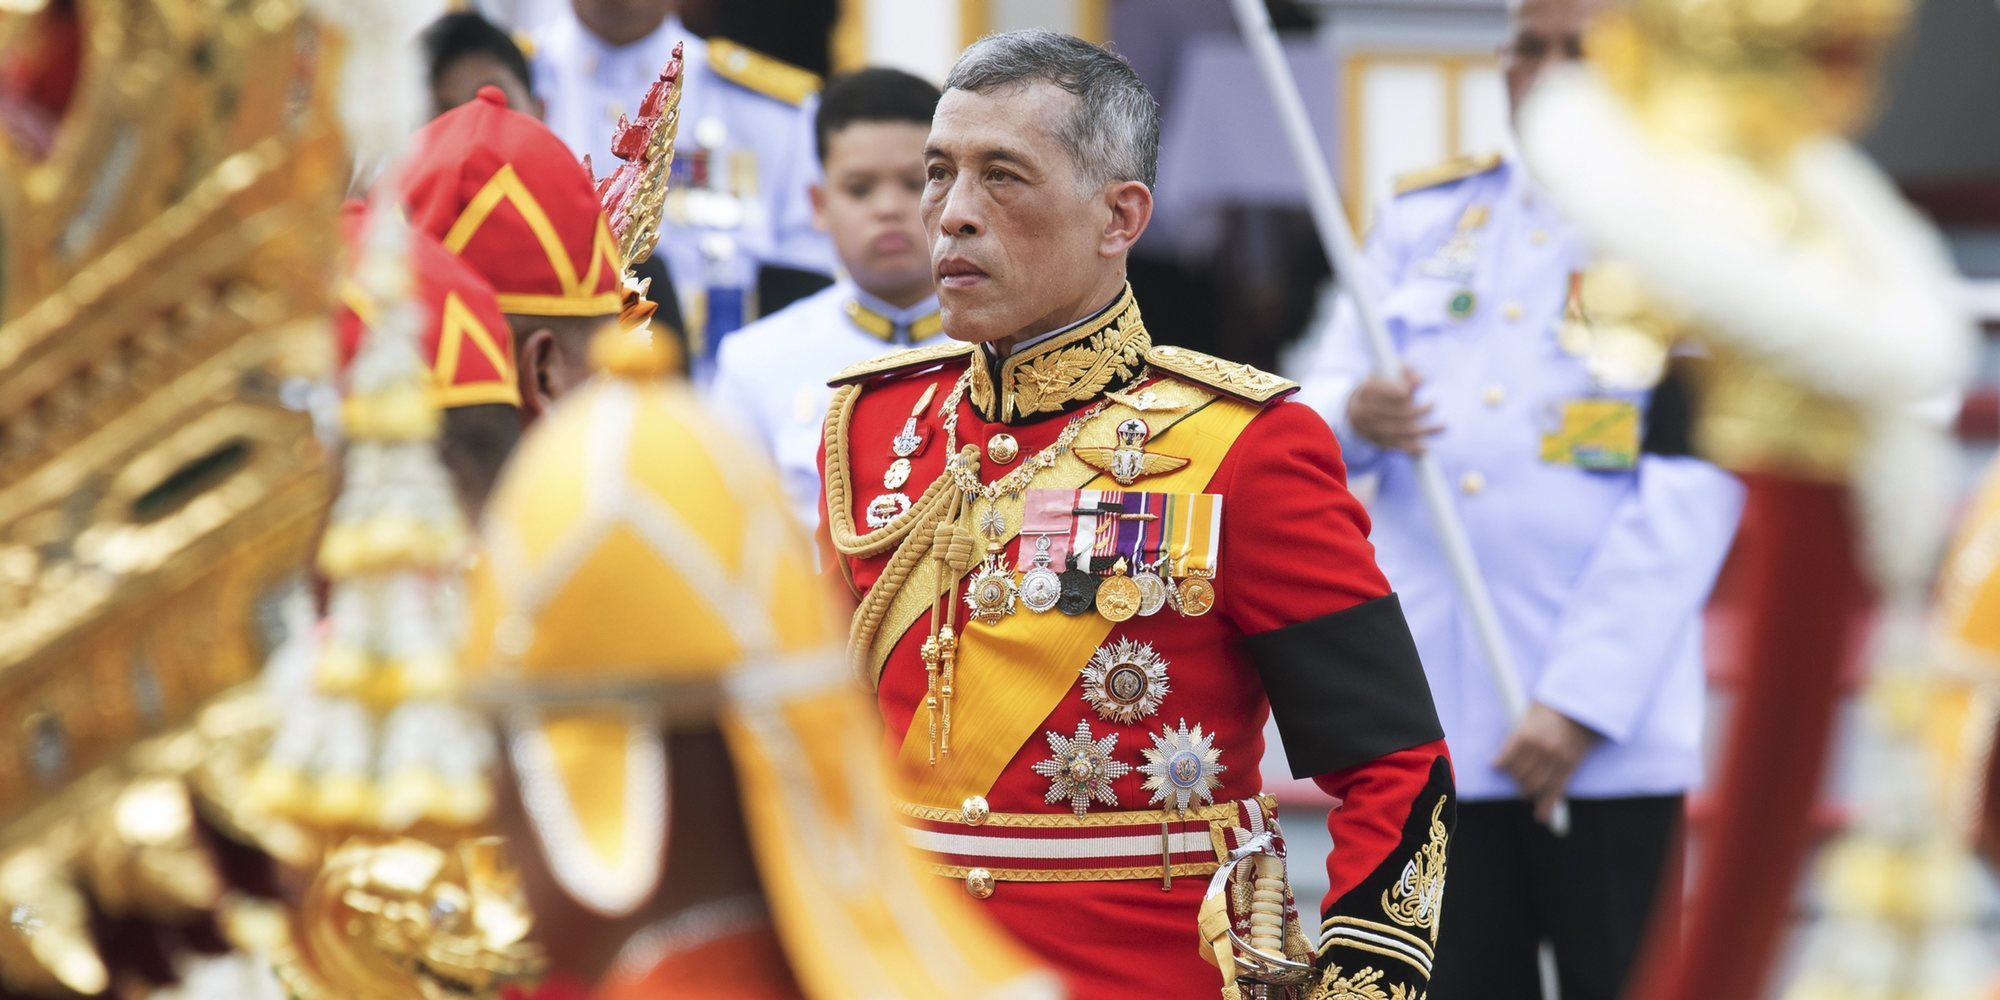 El Rey de Tailandia despoja de sus títulos a la Consorte Real por desleal y desagradecida